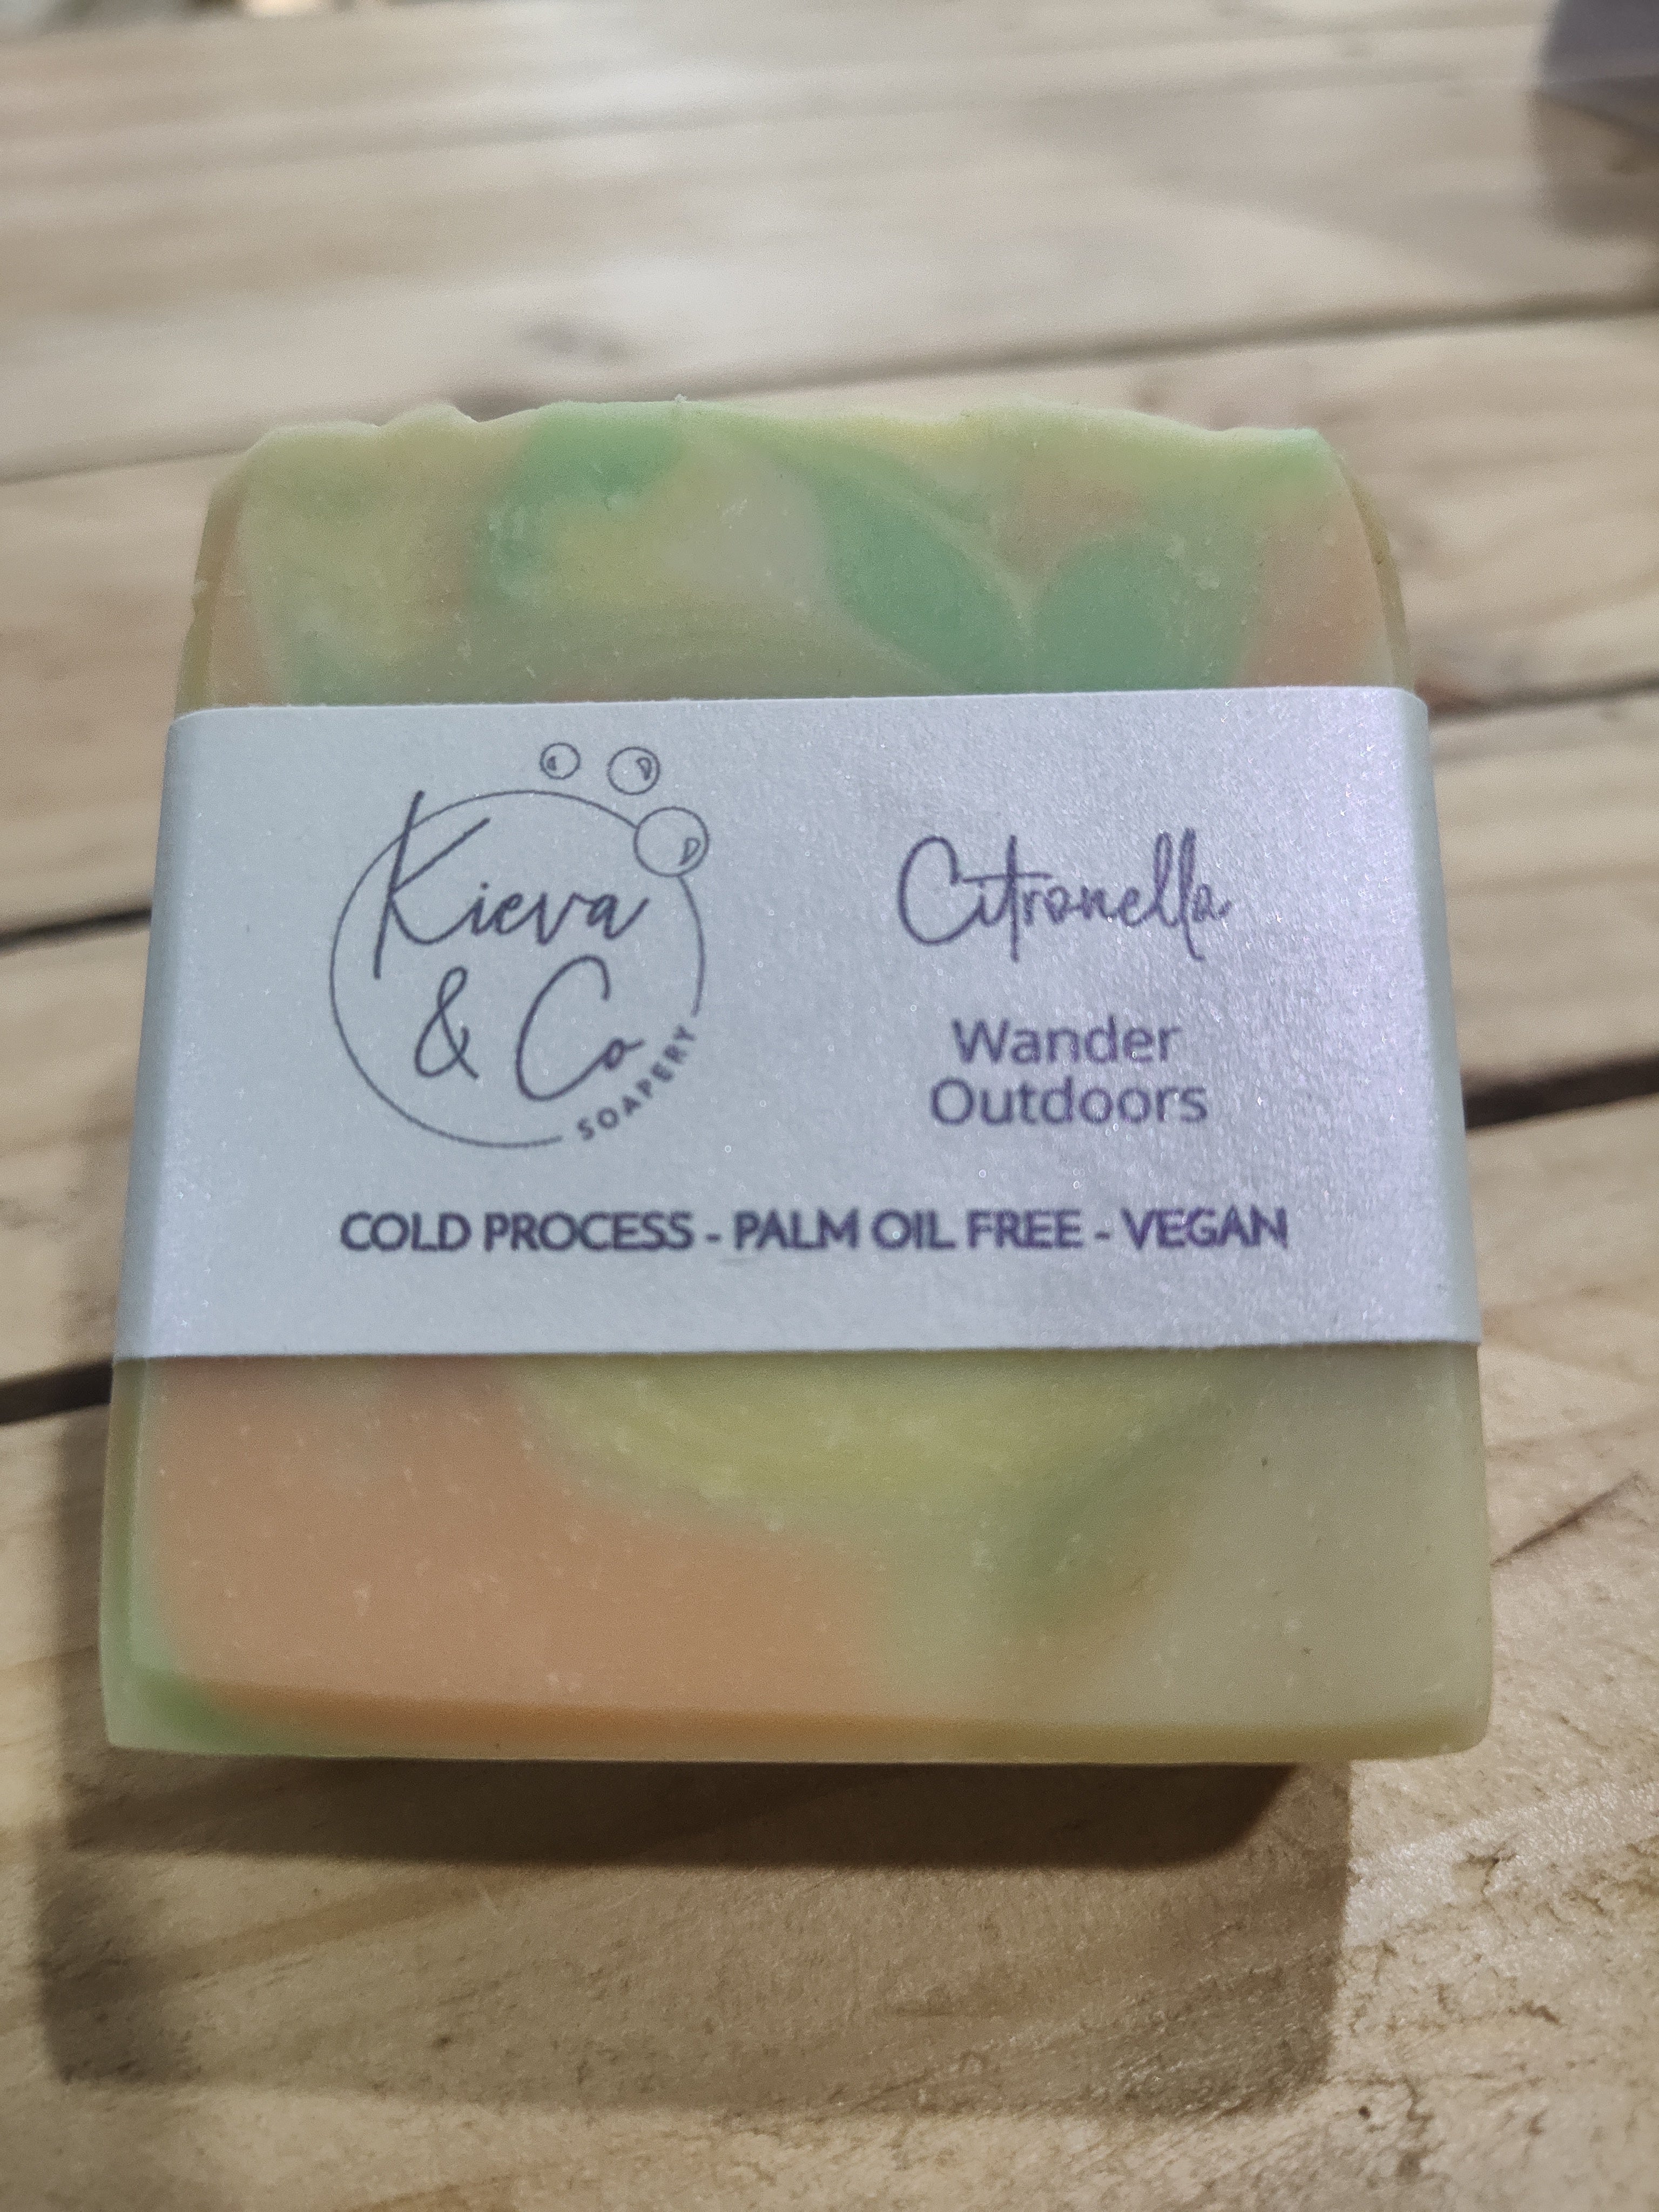 Kieva & Co Soapery Citronella Soap